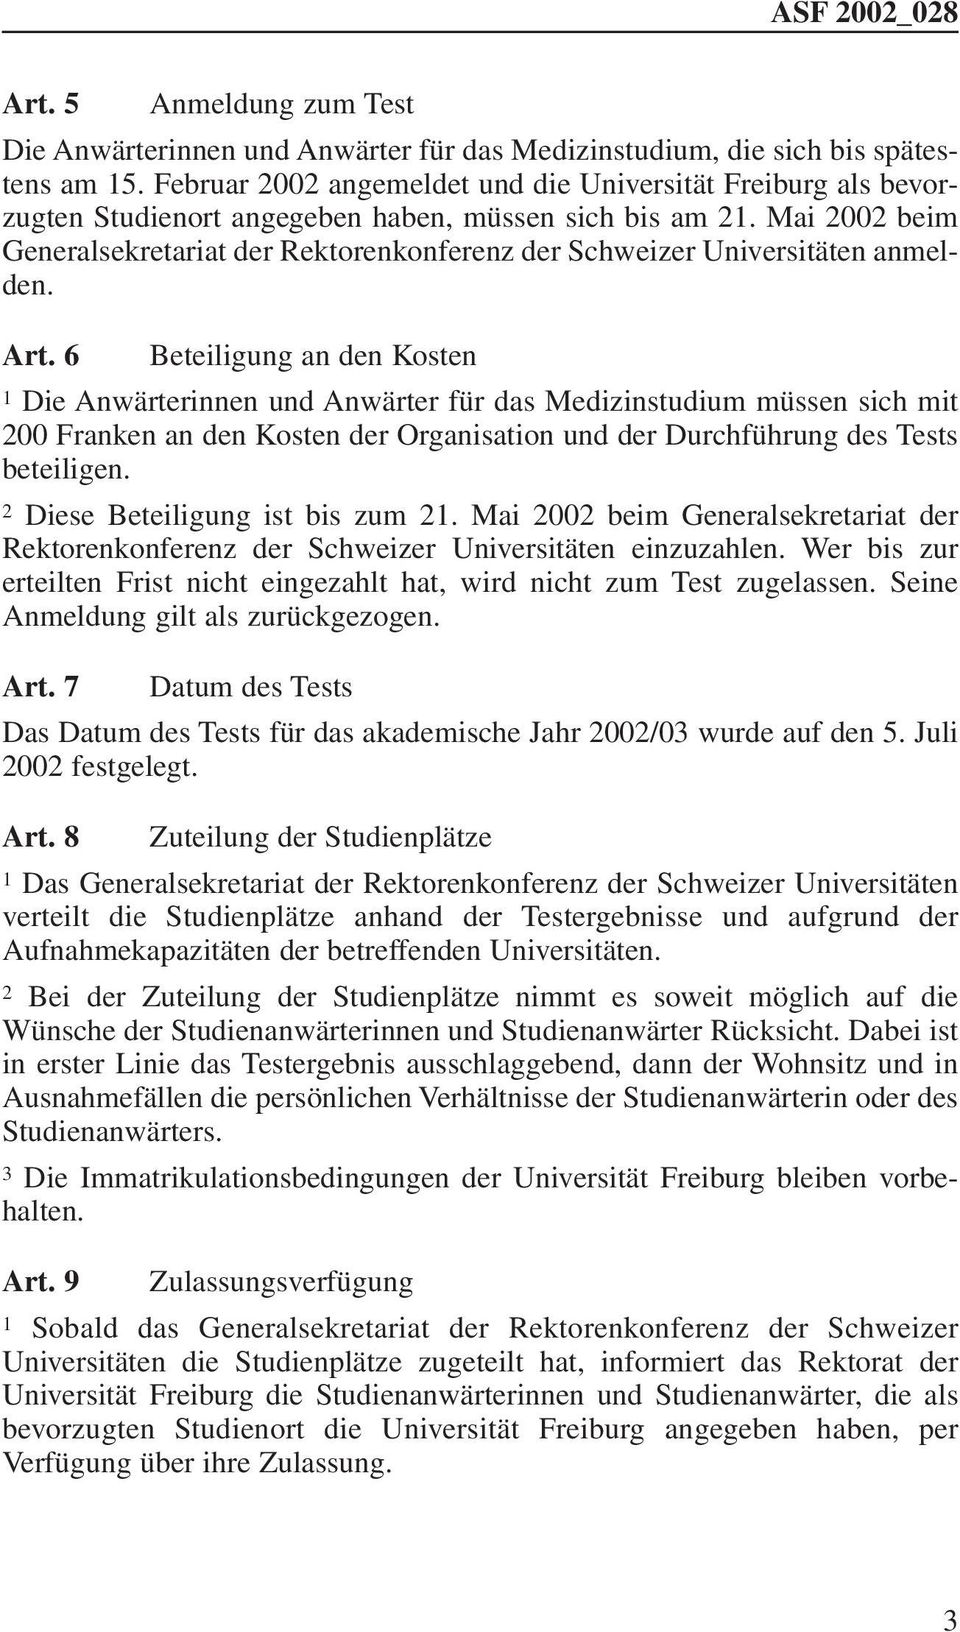 Mai 2002 beim Generalsekretariat der Rektorenkonferenz der Schweizer Universitäten anmelden. Art.